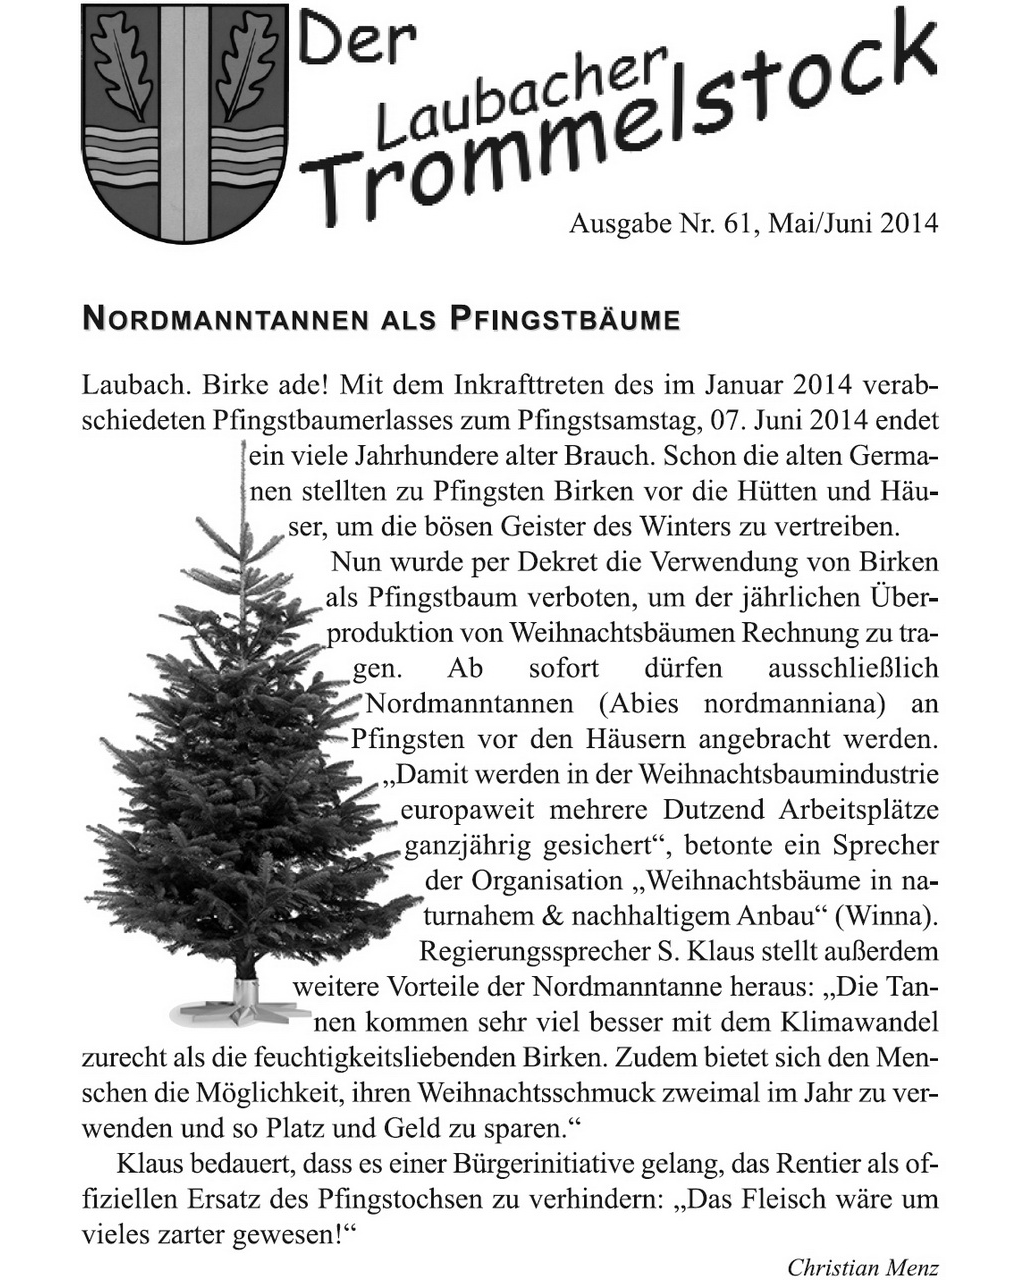 Laubacher-Trommelstock-Titelseite-061